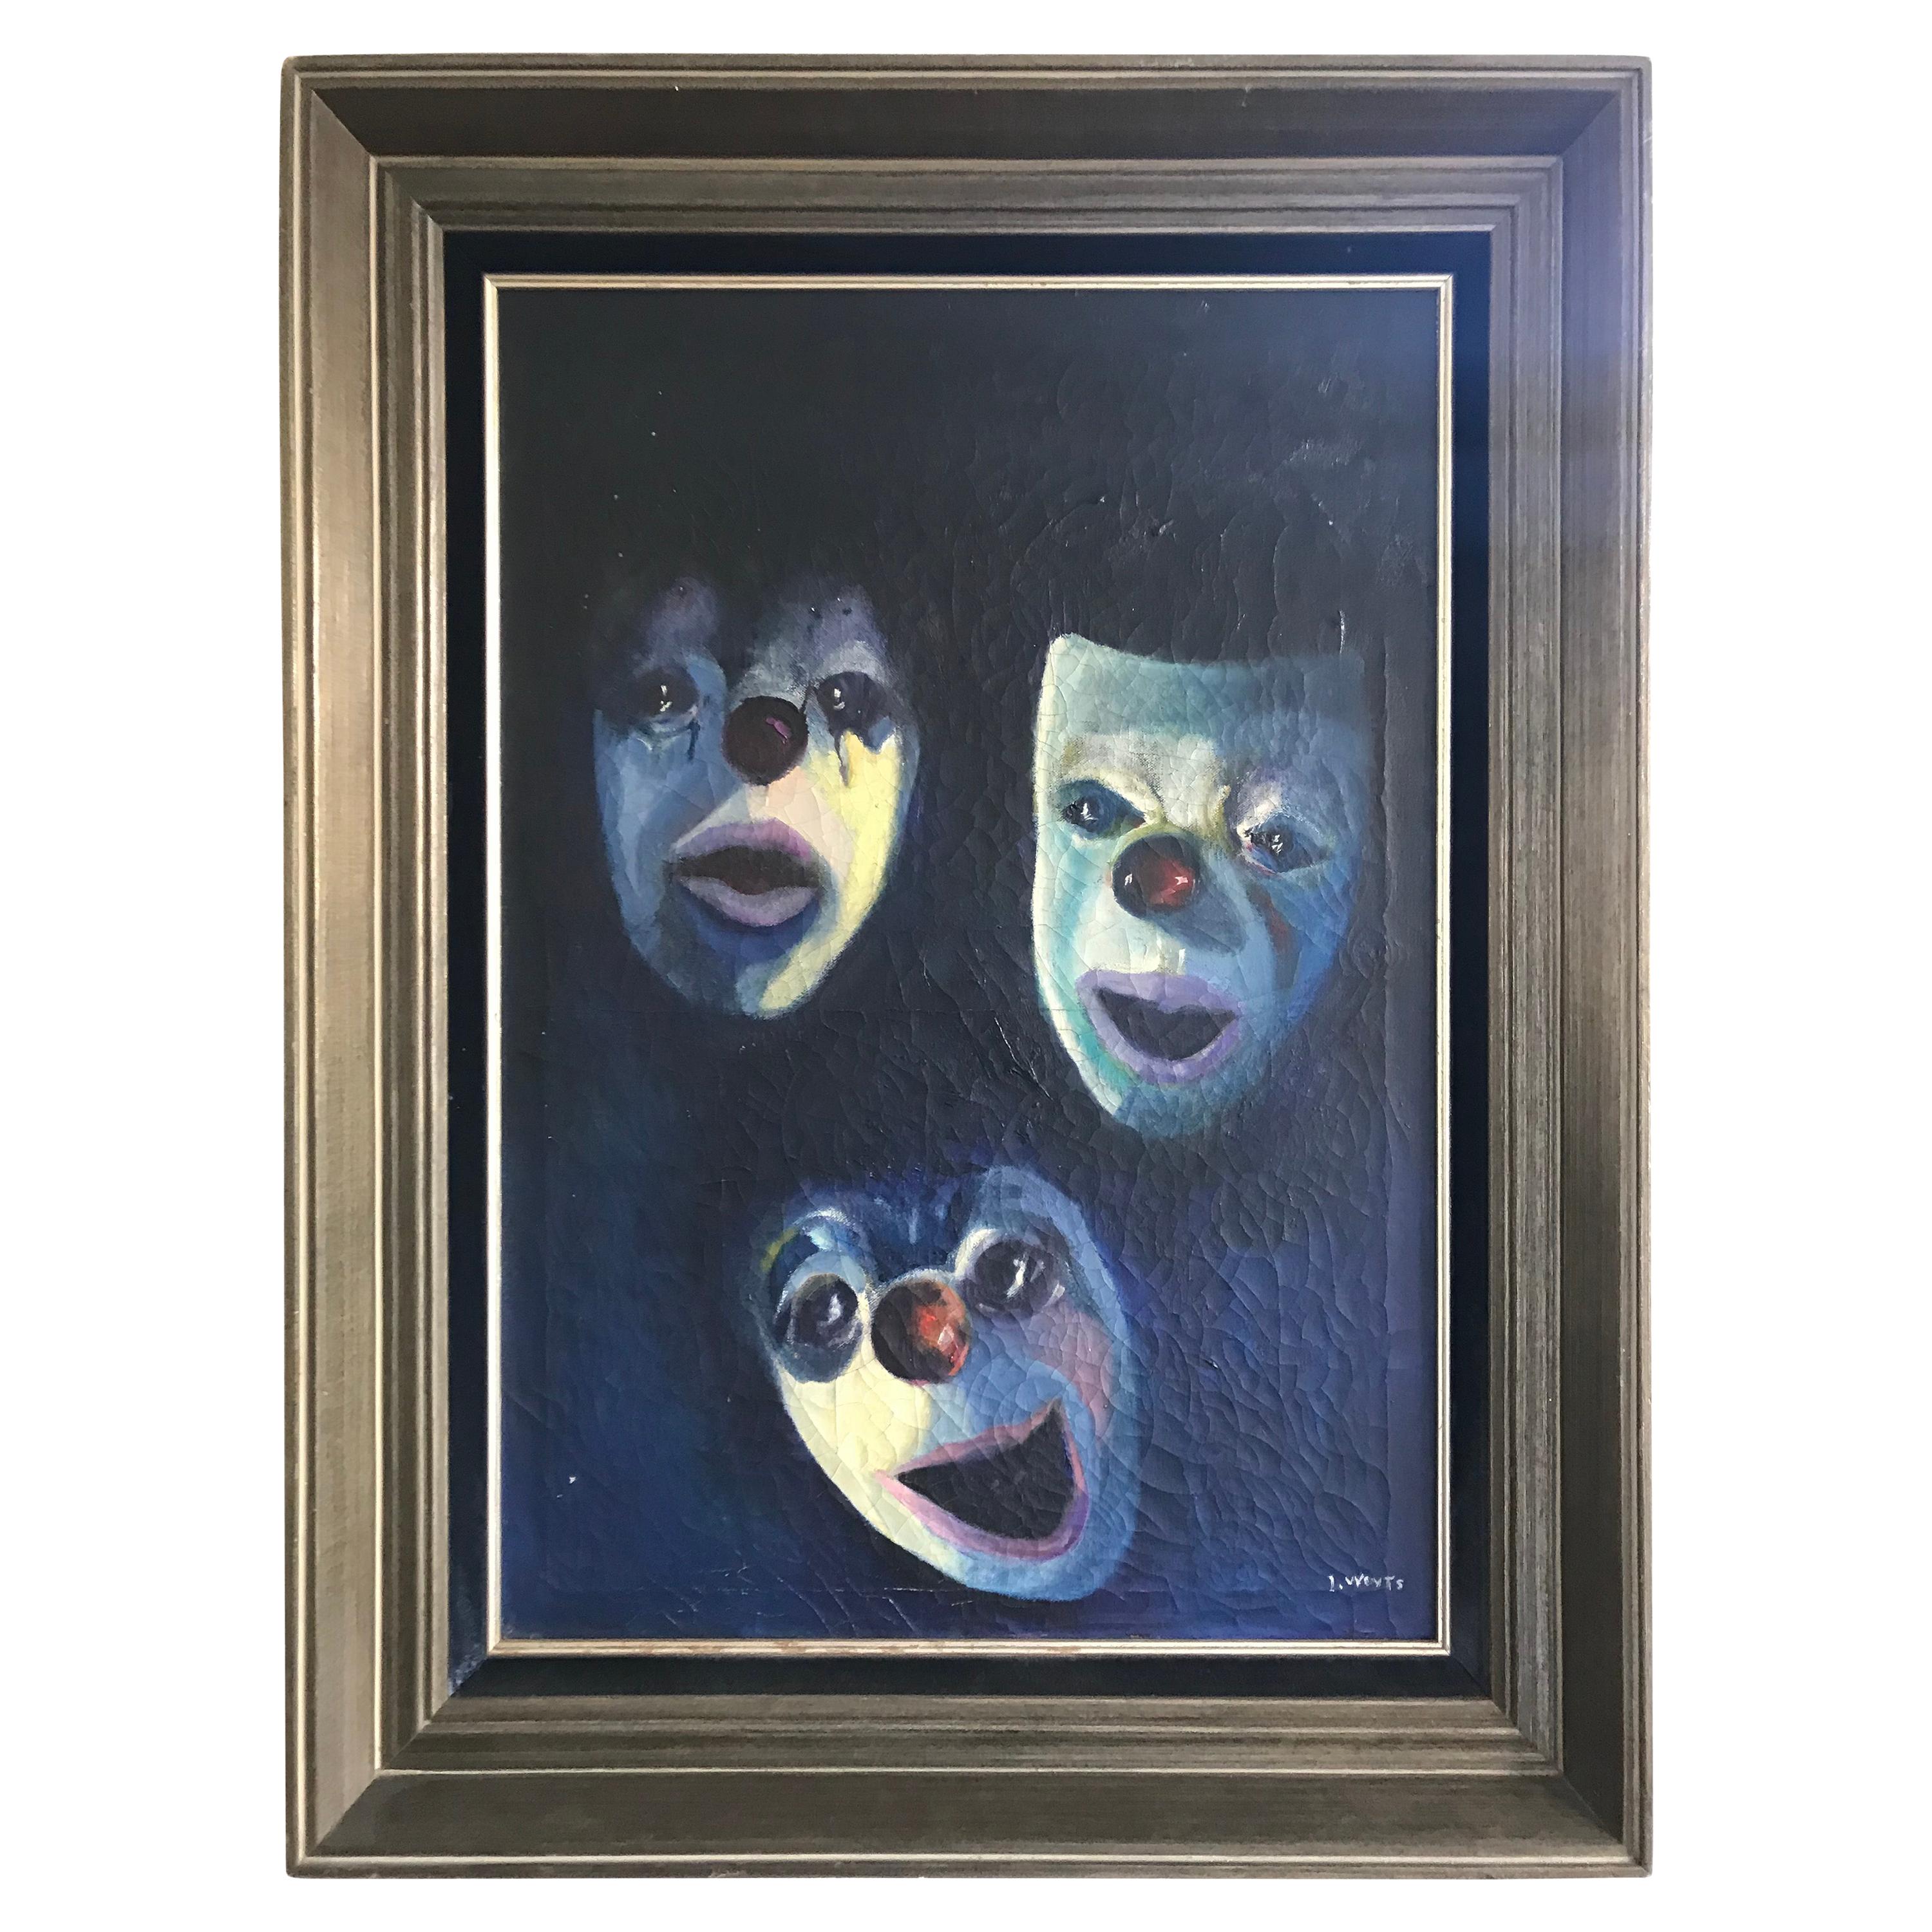 Ancienne peinture à l'huile sur toile montrant des masques de clowns et de mimes par I. Weyts